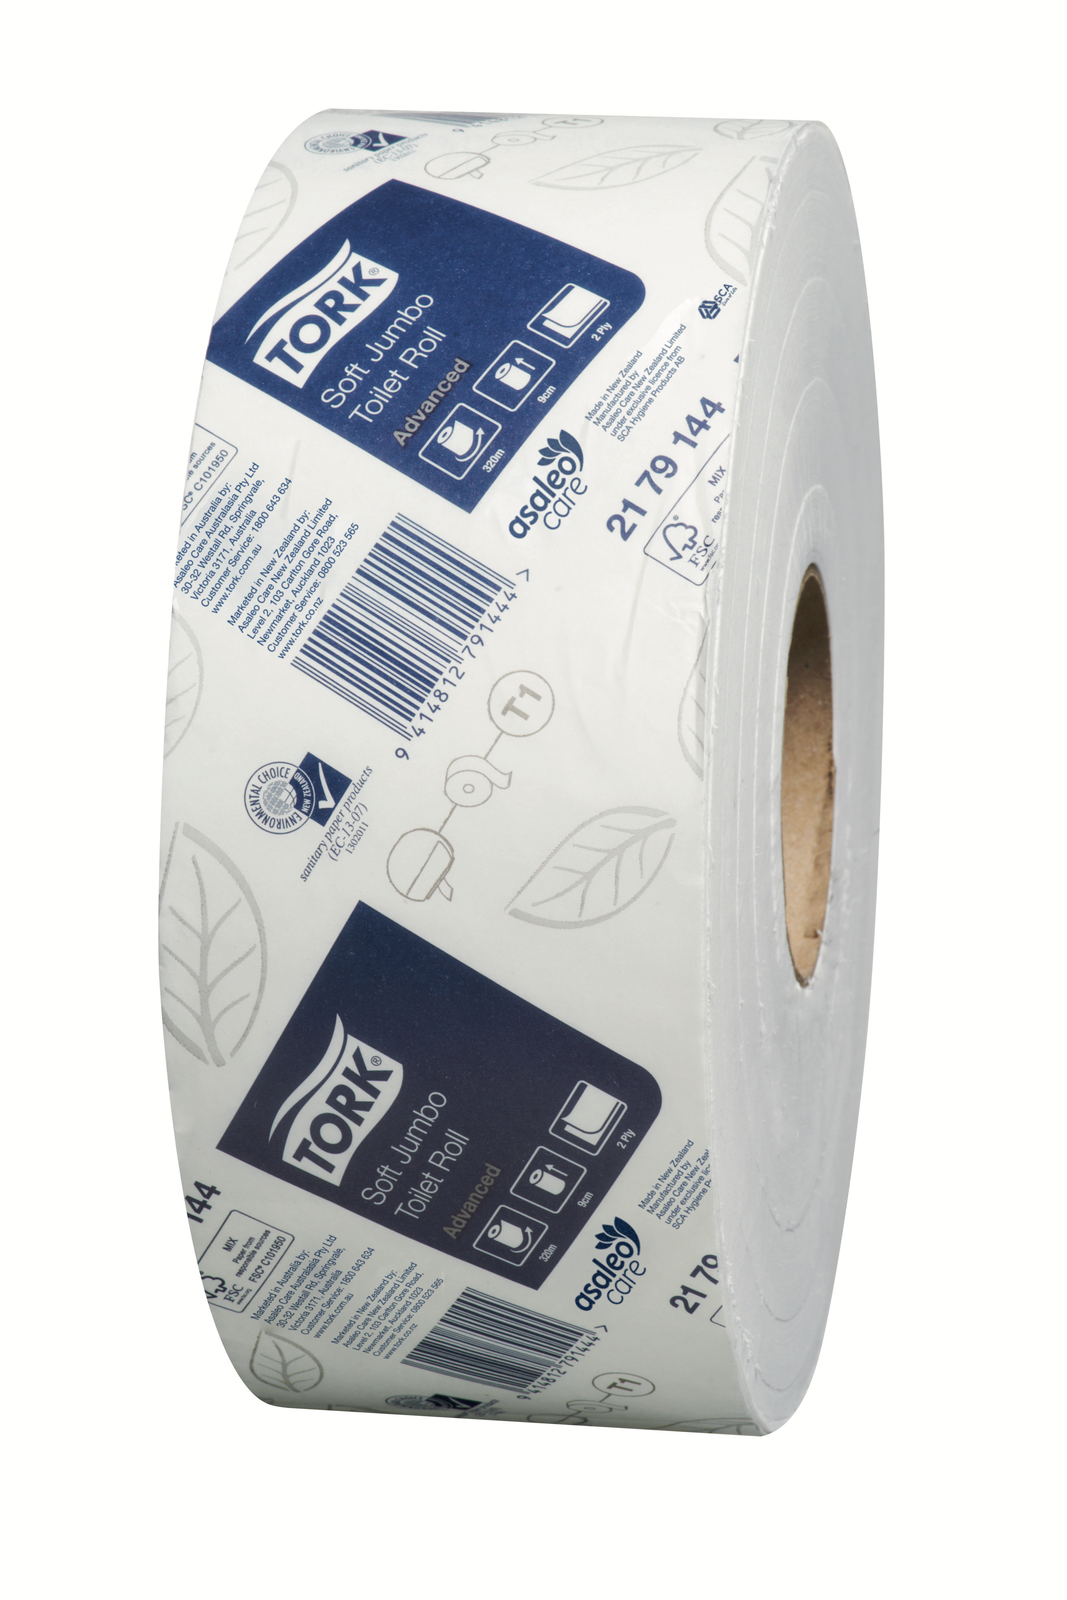 Toilet Paper - Tork Soft Jumbo Toilet Rolls 